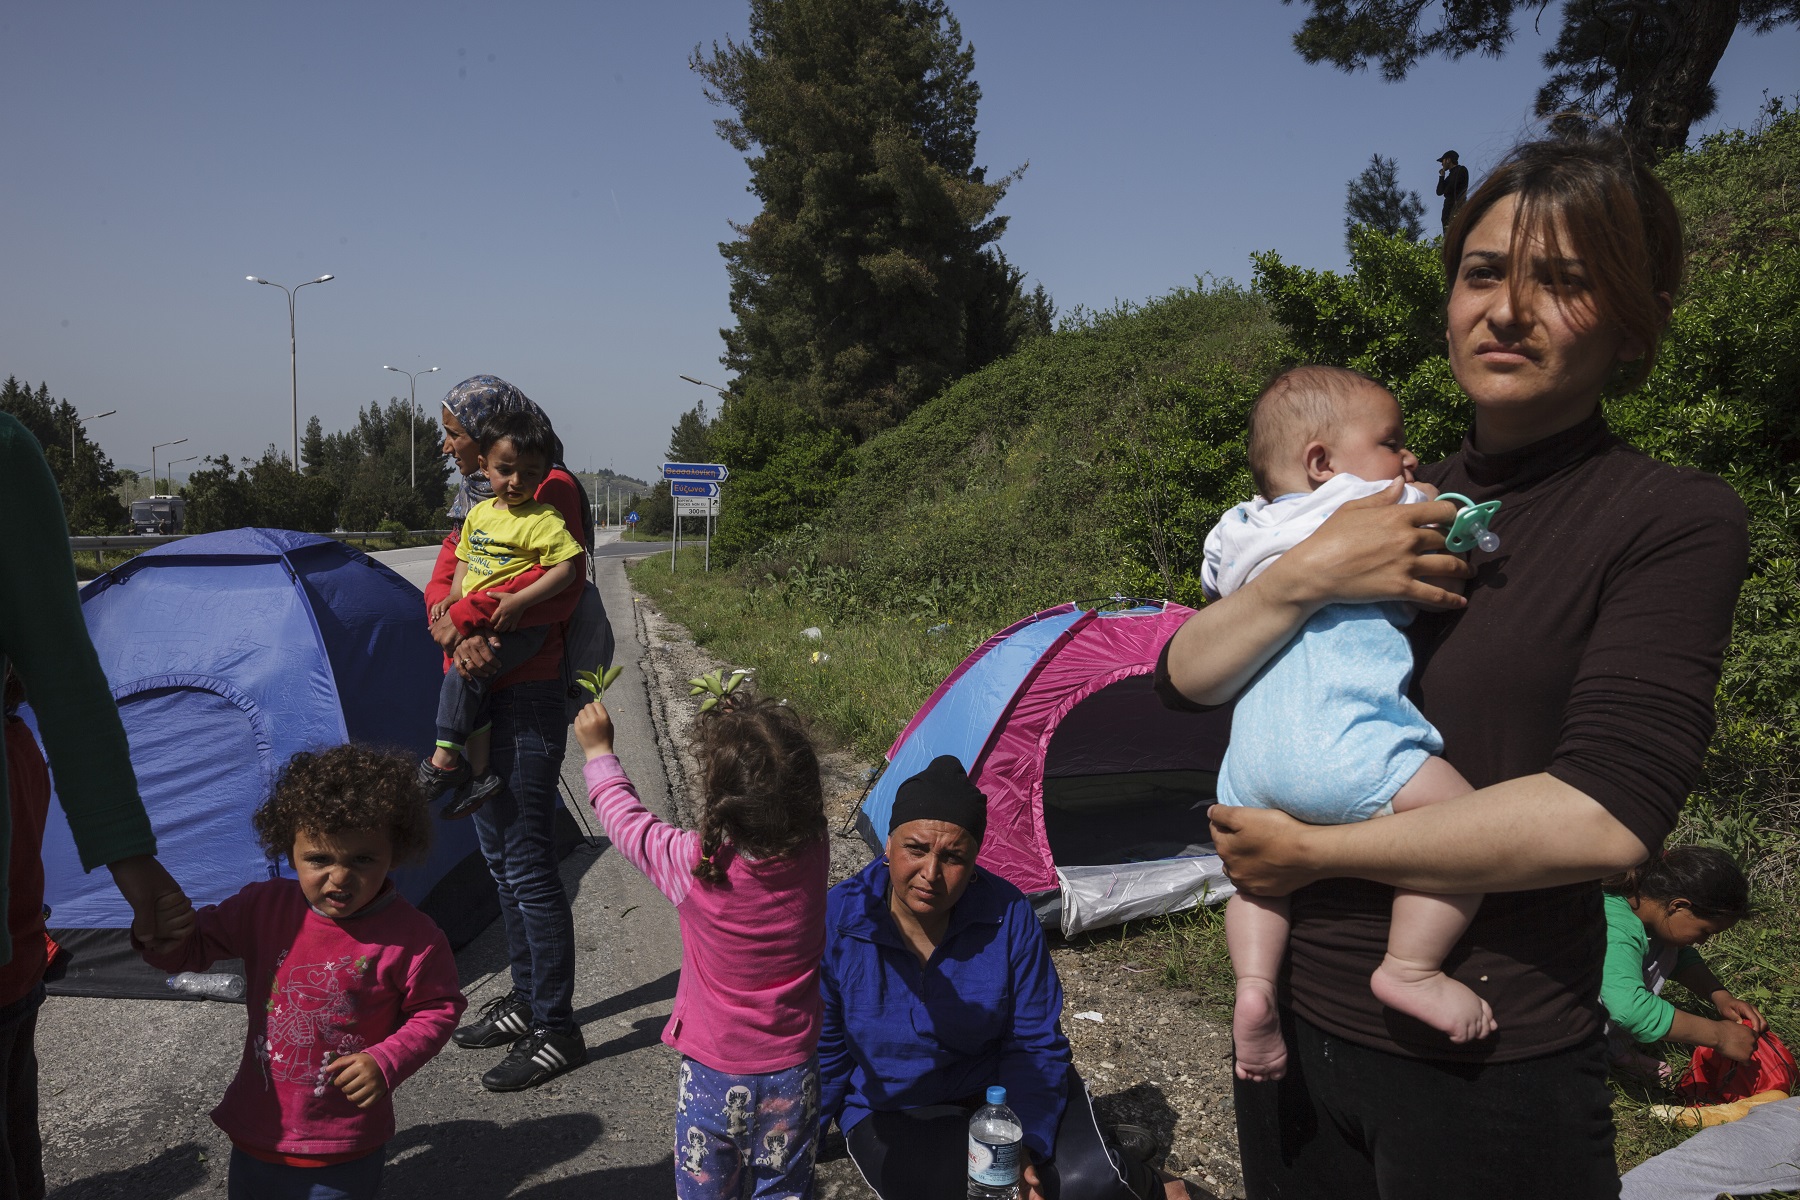 聯合國難民署： 如何執行歐盟與土耳其之間協定對於保護難民的權利至關重要